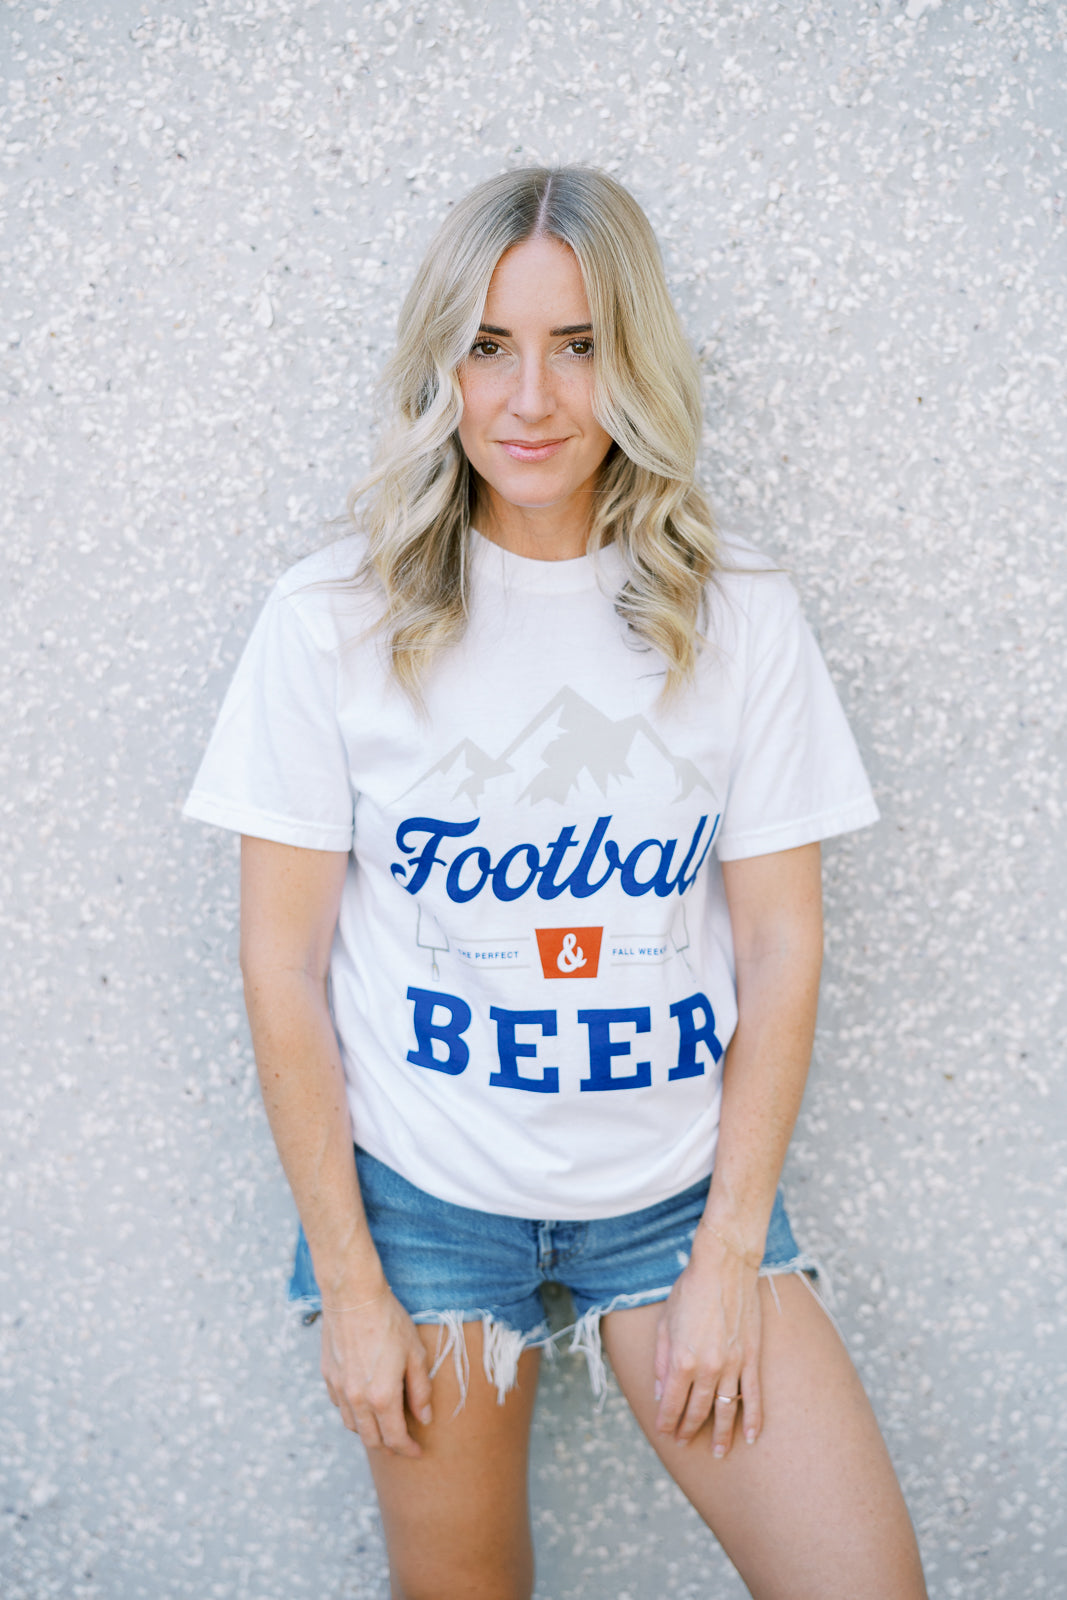 Football and Beer Tee